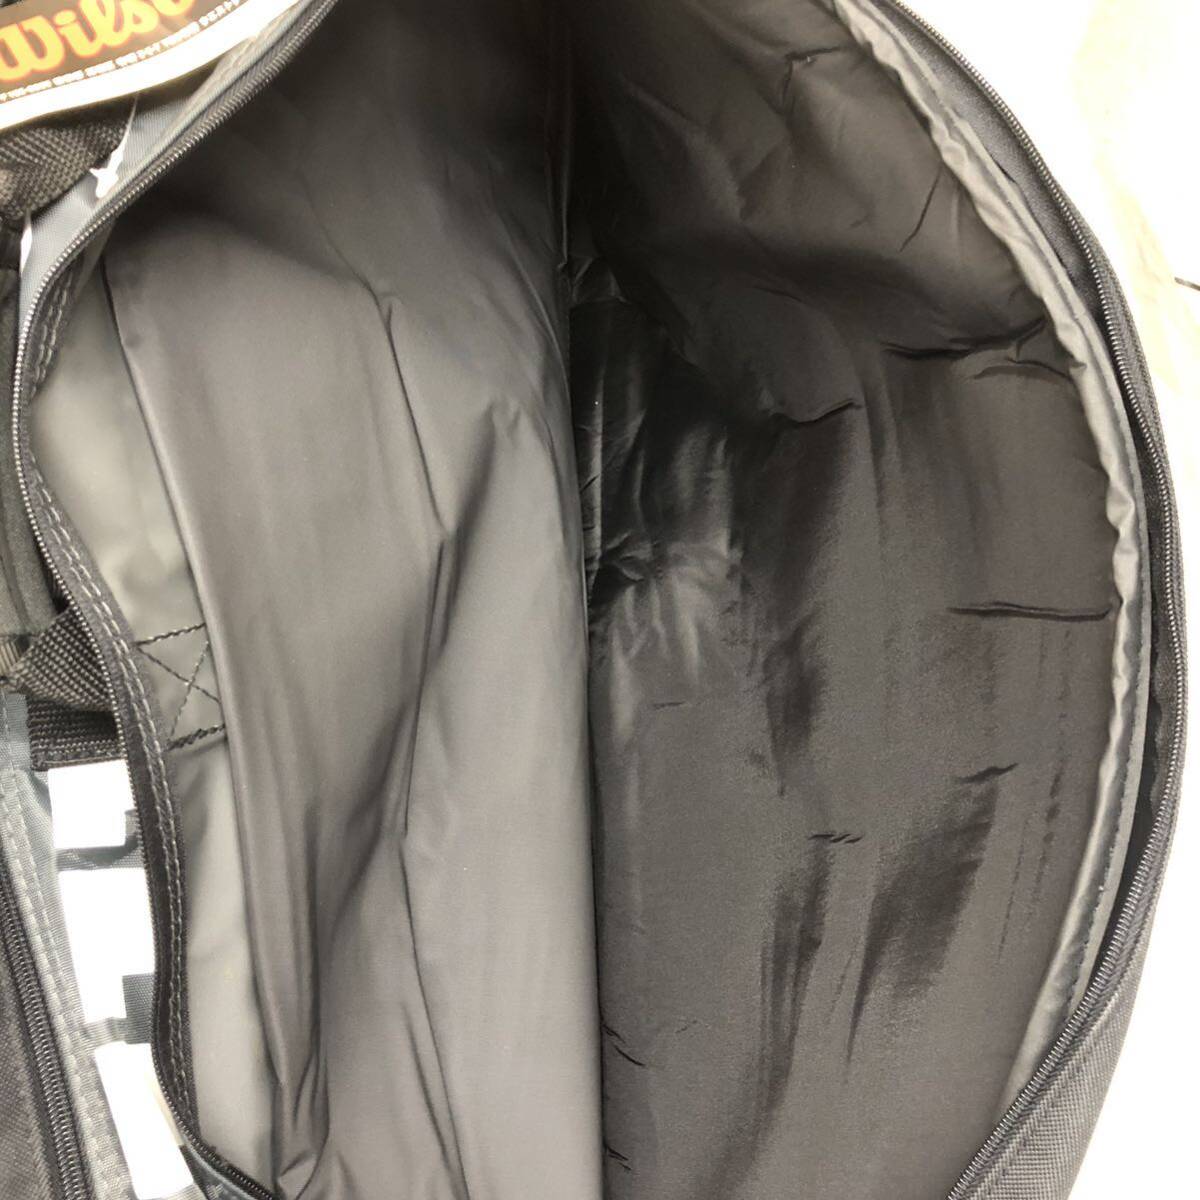 14 Wilson racket bag black used unused long-term keeping goods tennis tennis bag racket 